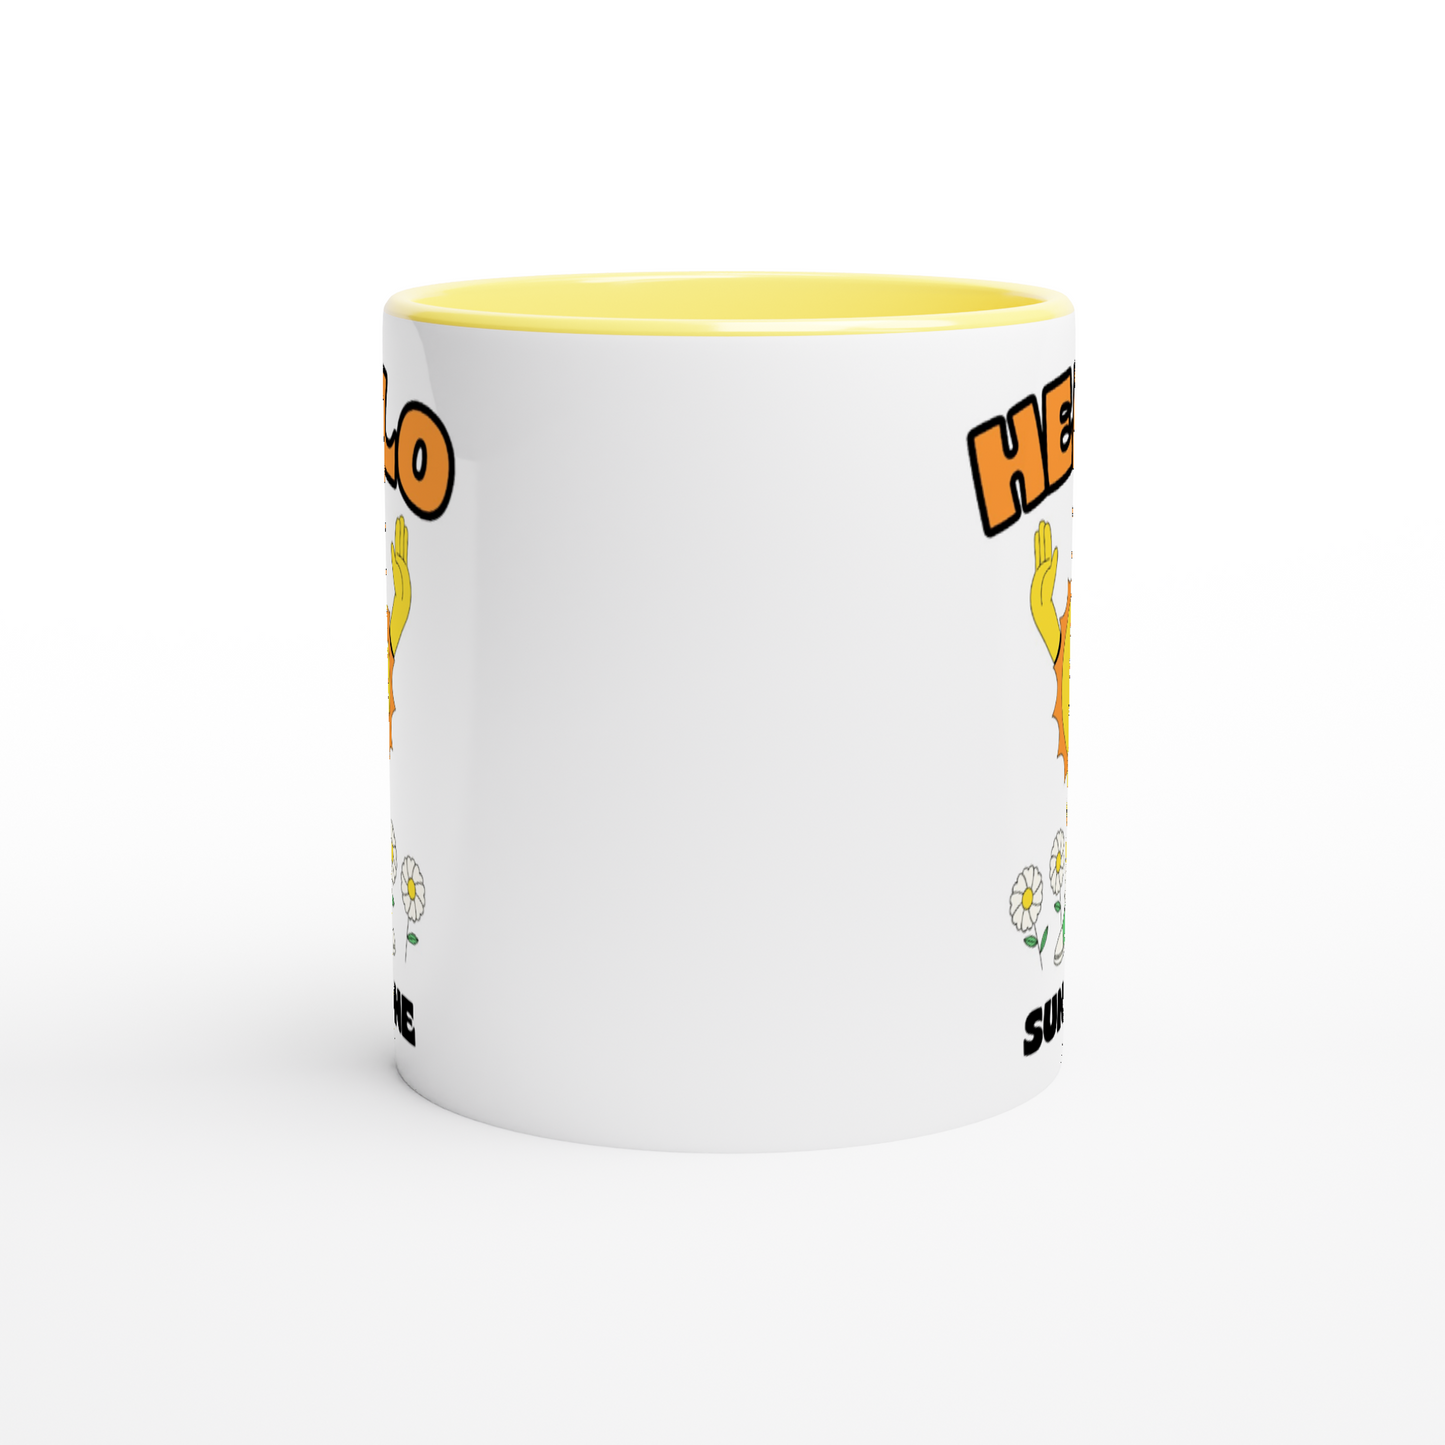 Hello Sunshine - White 11oz Ceramic Mug with Colour Inside Colour 11oz Mug Retro Summer